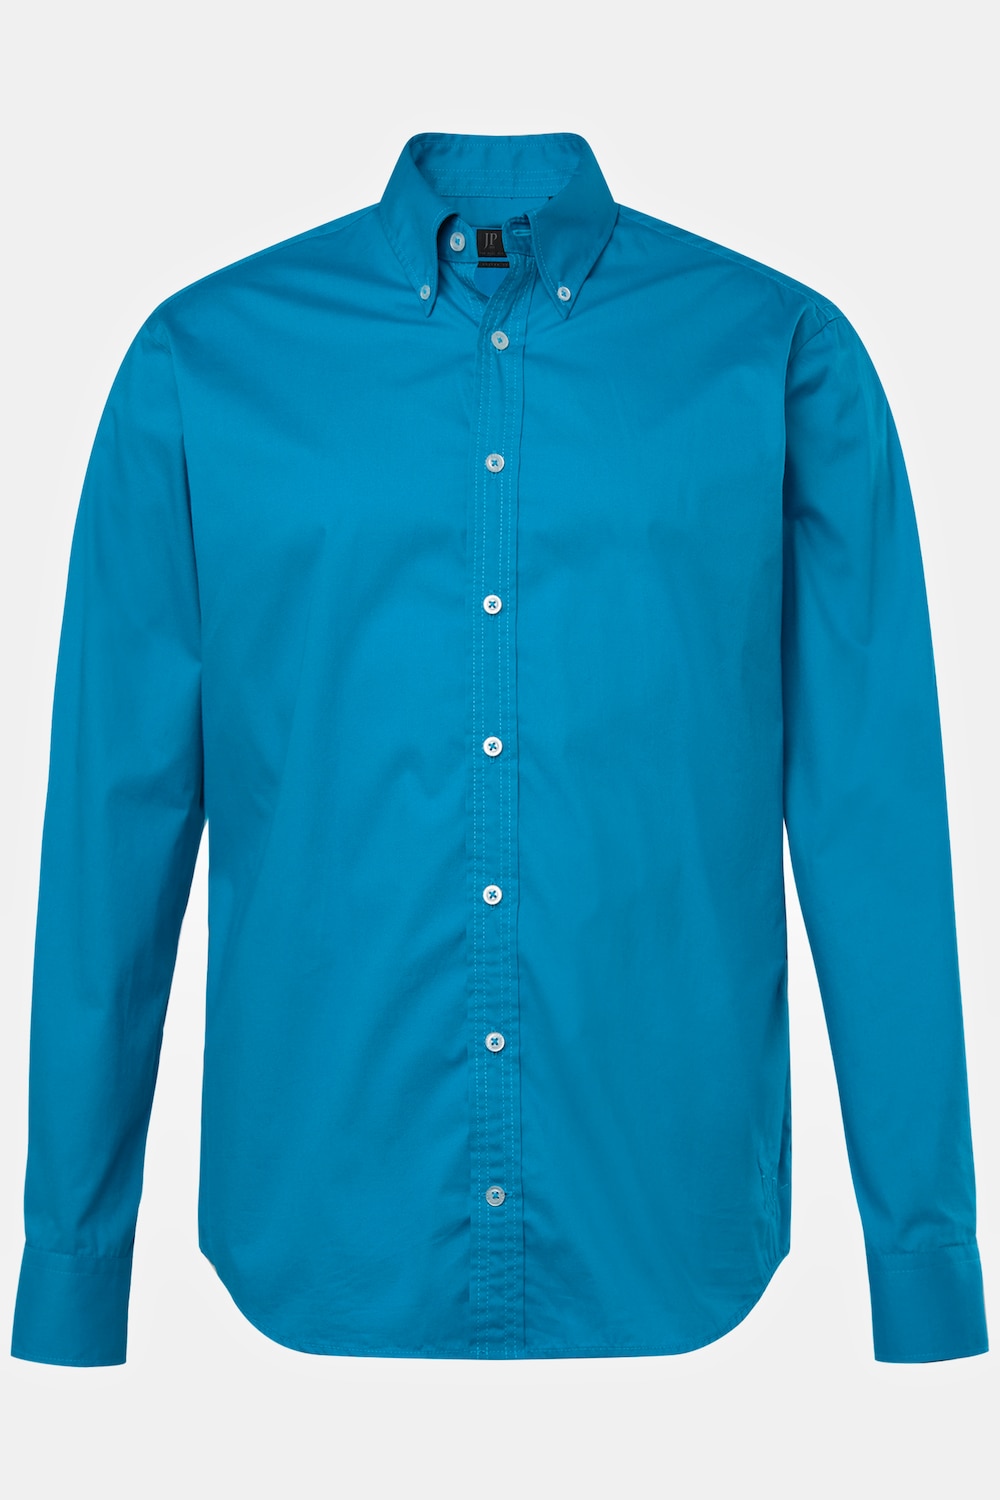 Grote Maten Overhemd, Heren, turquoise, Maat: 3XL, Katoen, JP1880